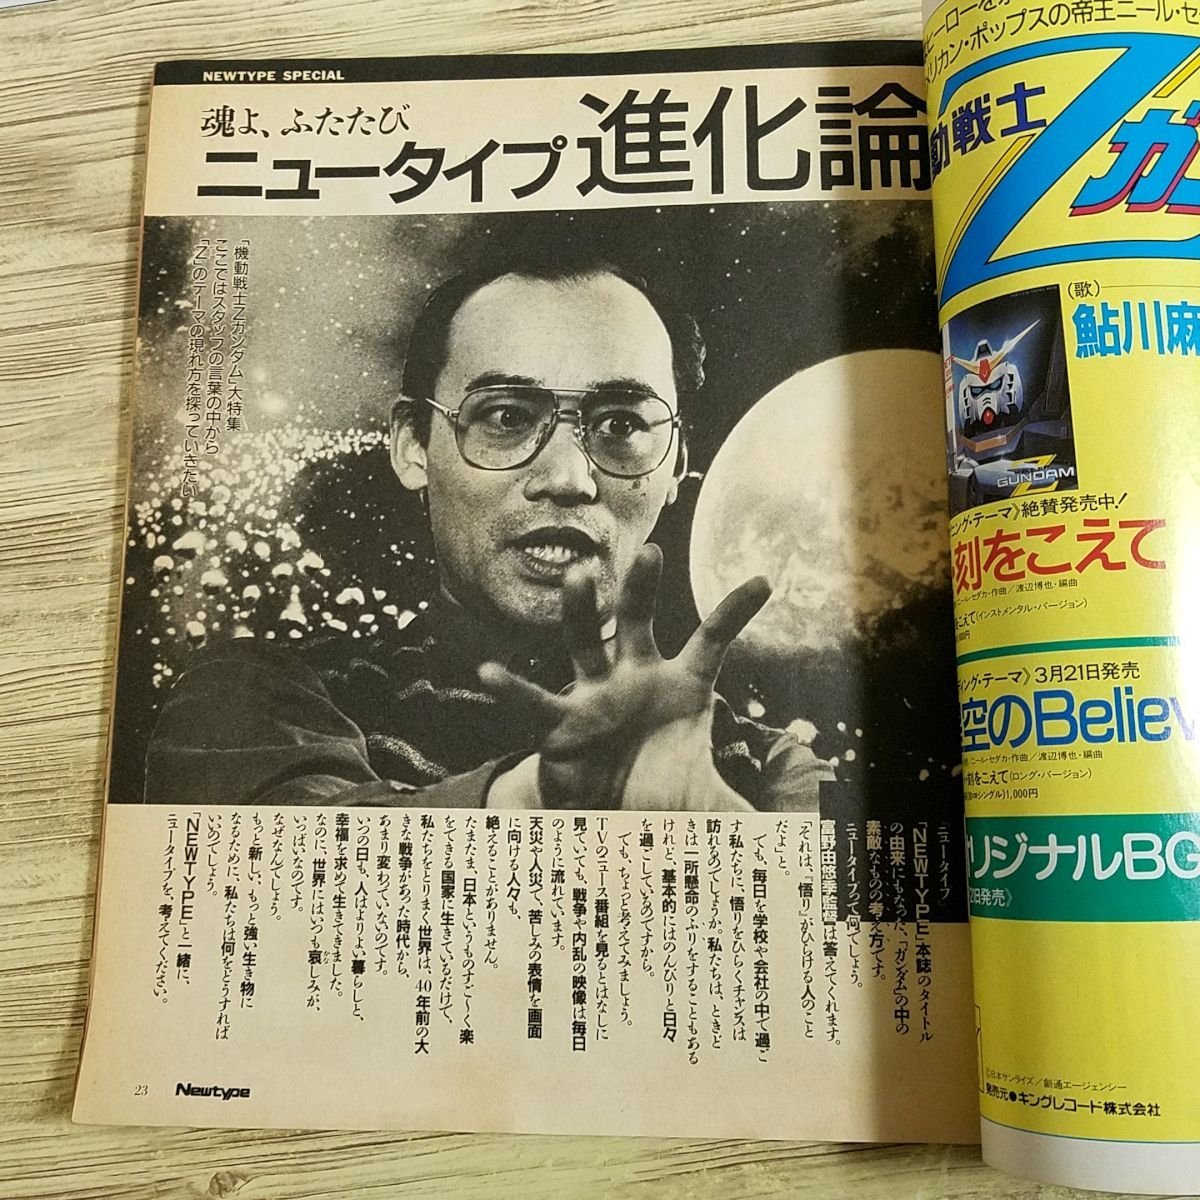  аниме журнал [ ежемесячный Newtype Newtype 1985 год 4 месяц .. номер ( отдельный выпуск дополнение есть )] Z Gundam L gaim.... сезон ... Kamui. .[ стоимость доставки 180 иен 